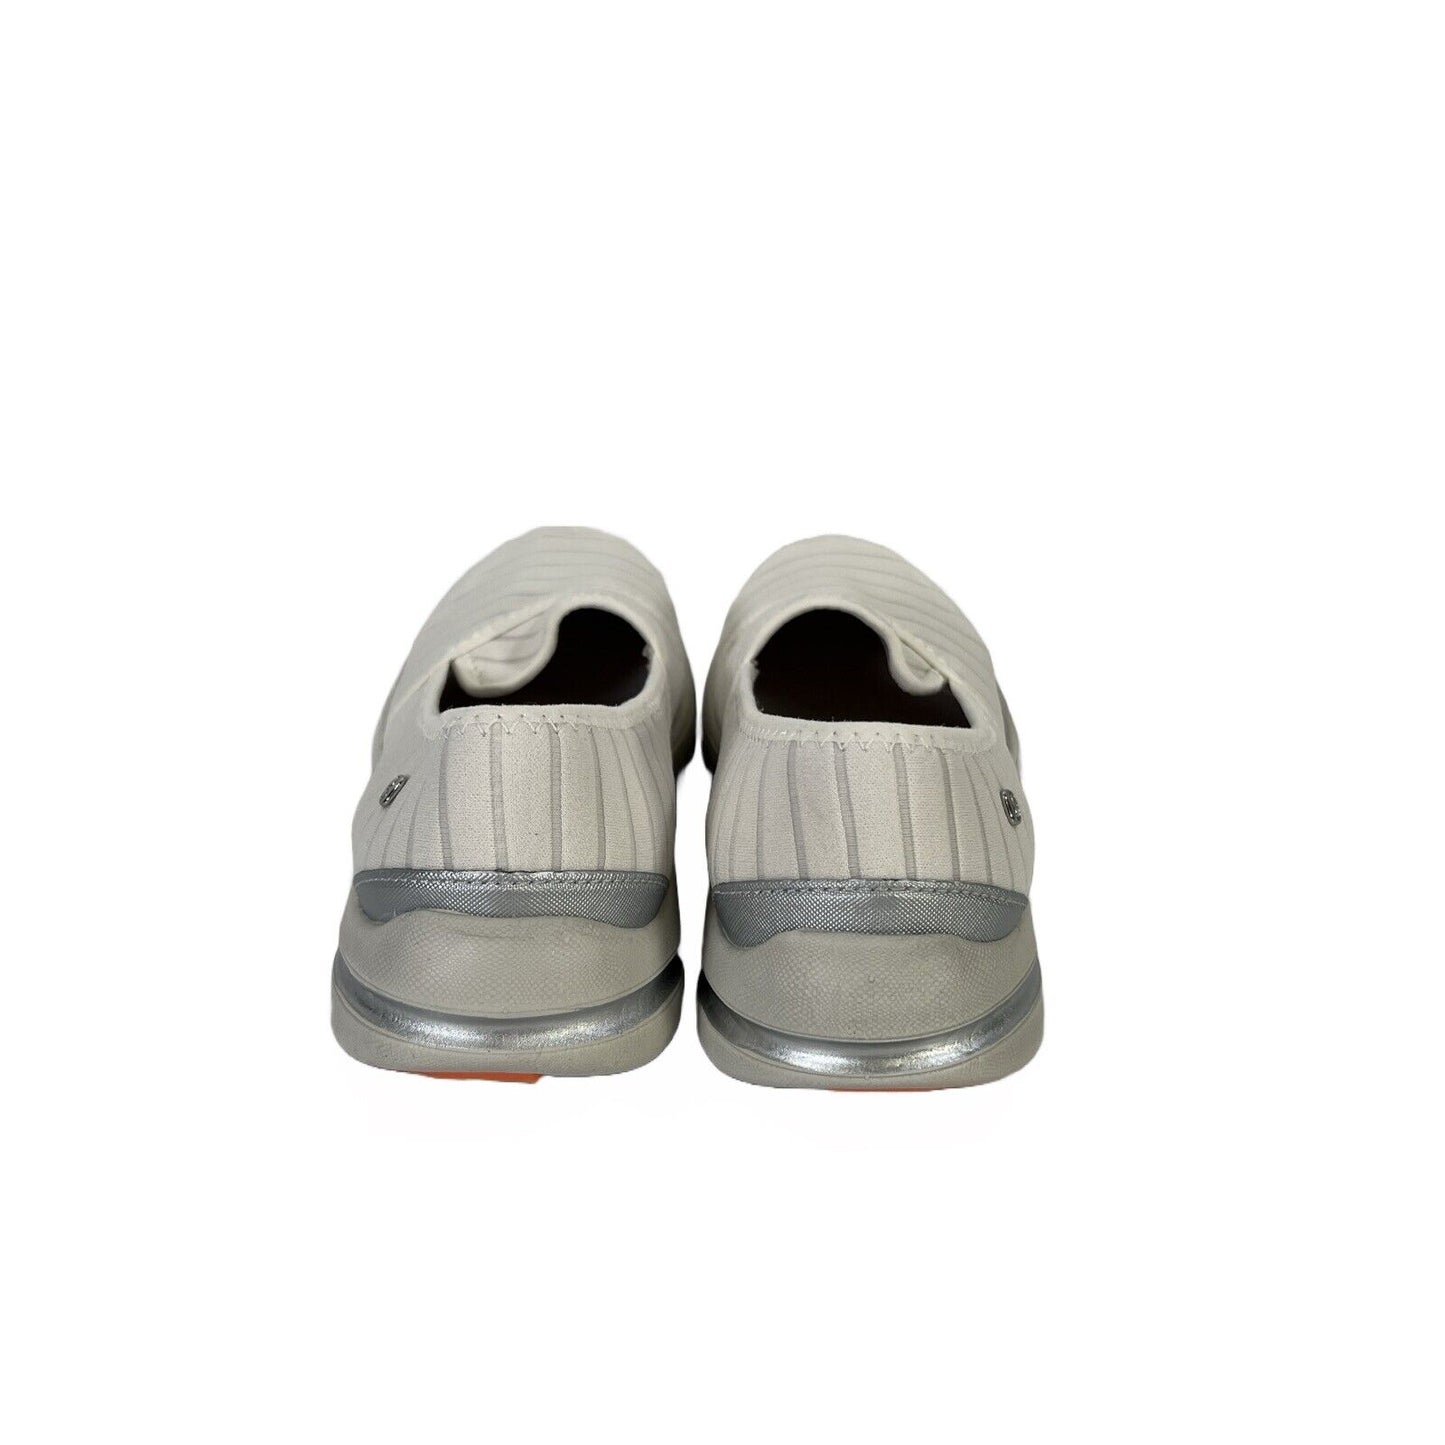 Bzeees Women's White Lakeside Slip On Comfort Loafers - 8.5